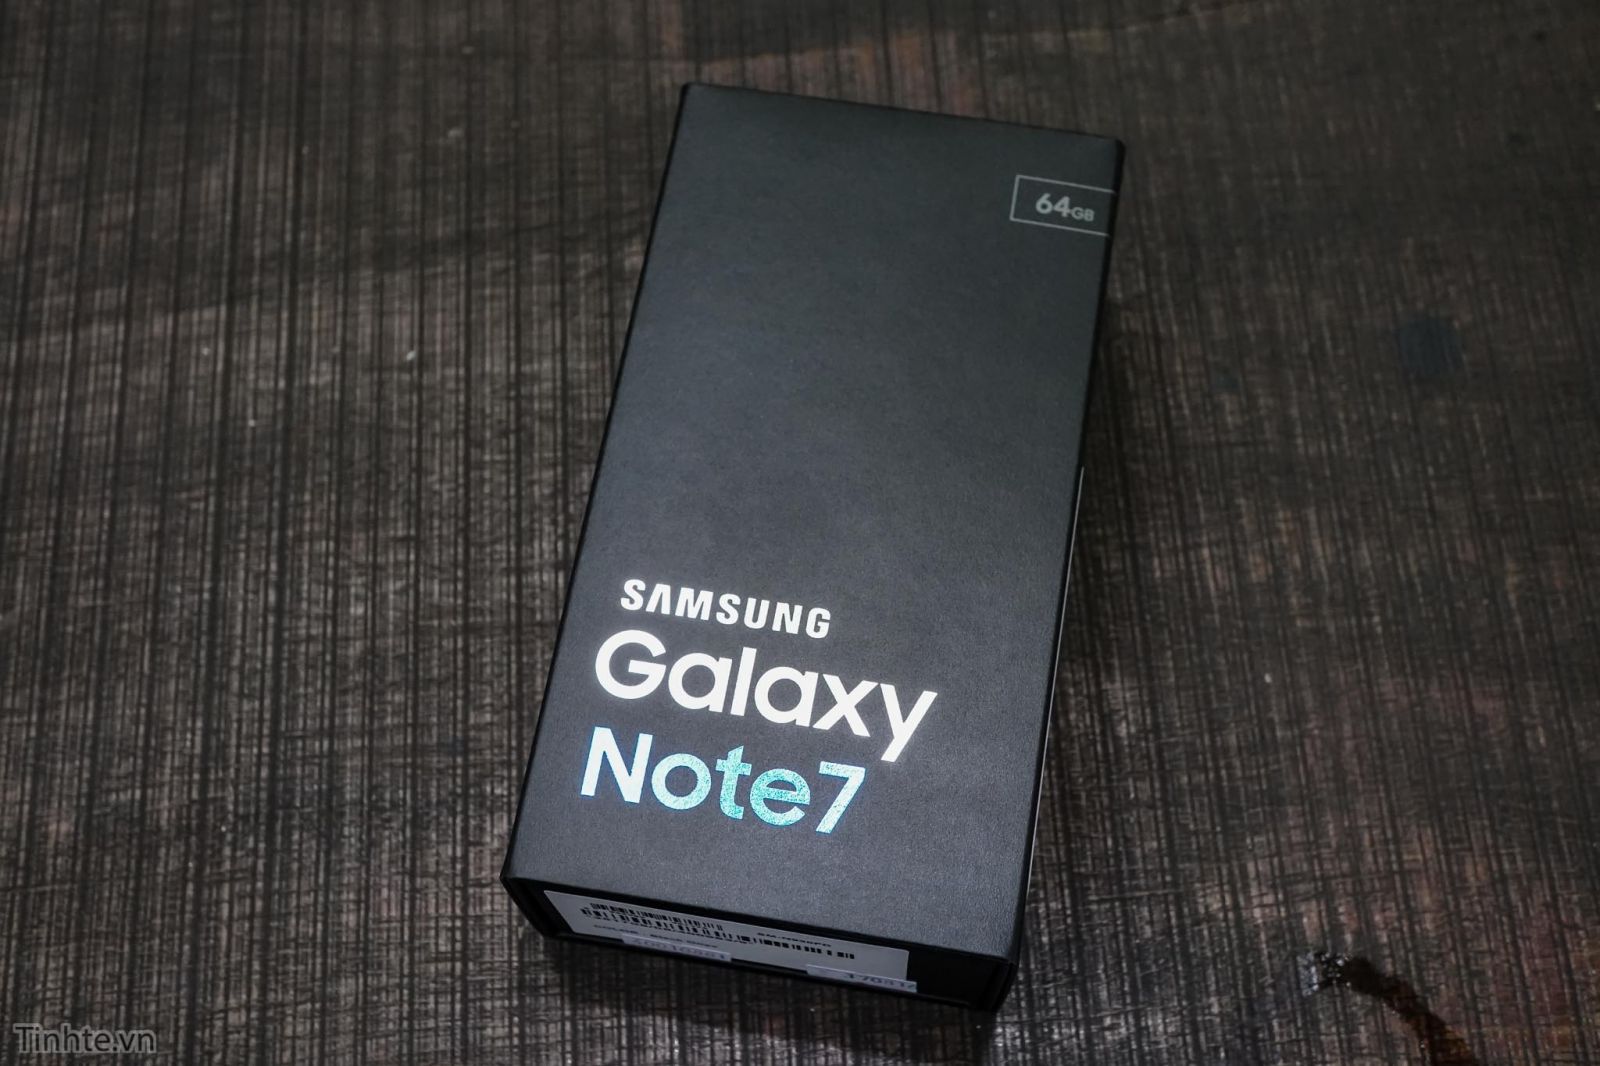 Cách test máy Samsung Galaxy Note 7 chính hãng